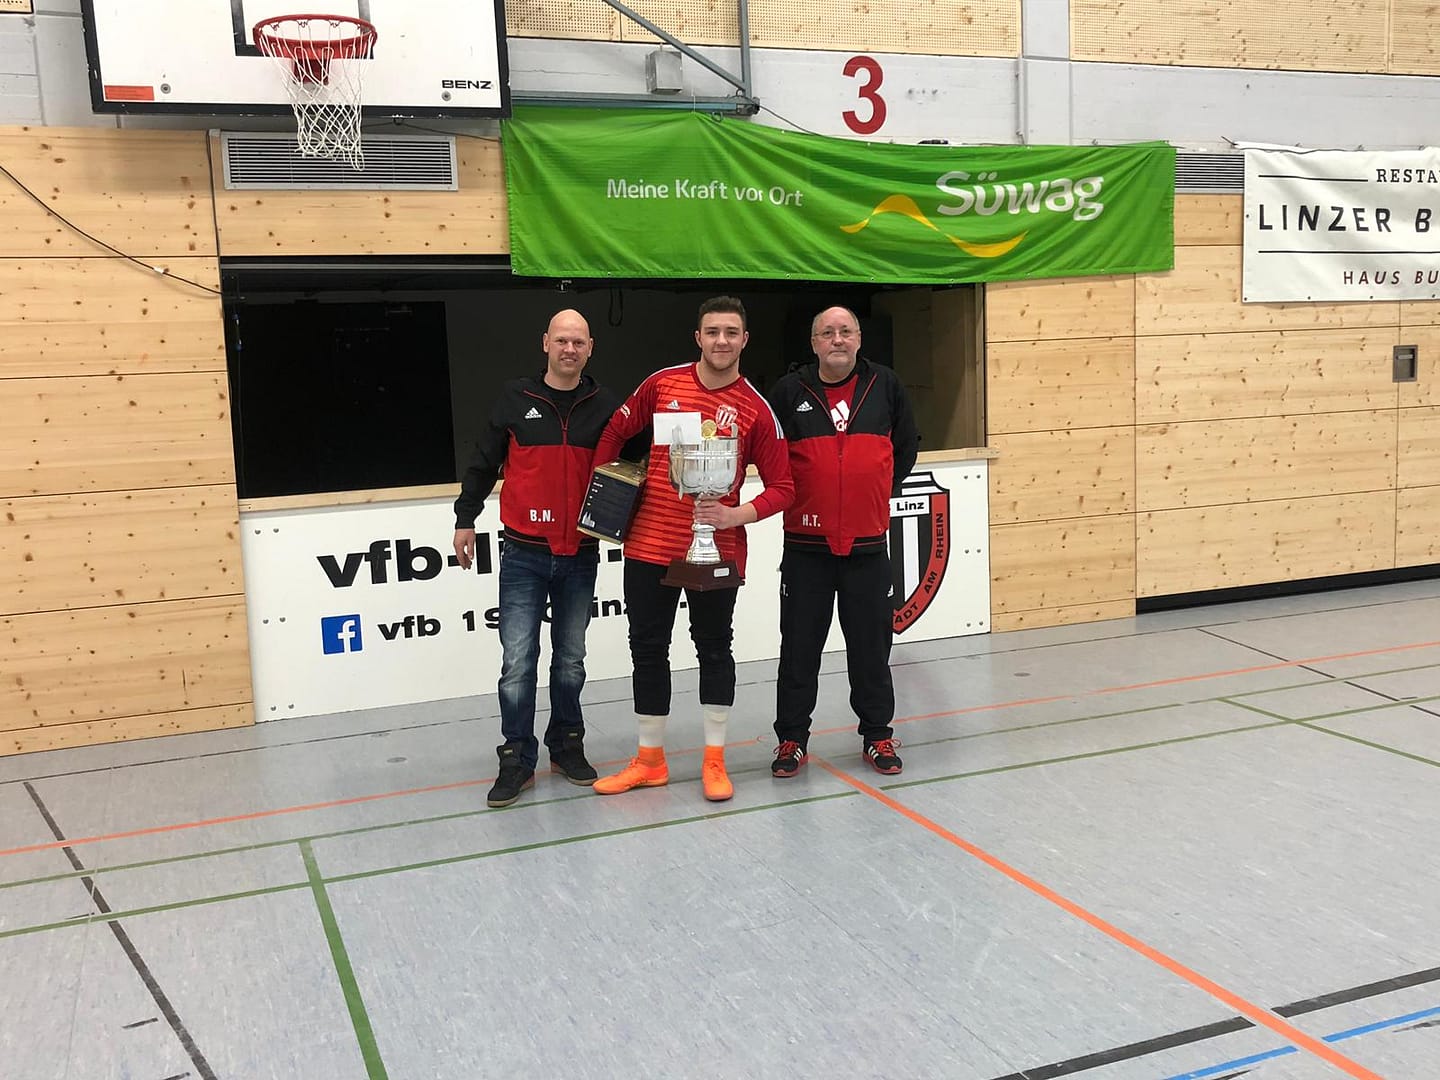 Süwag Hallencup 2019 - Seniorenturnier - 1. Platz VfB Linz